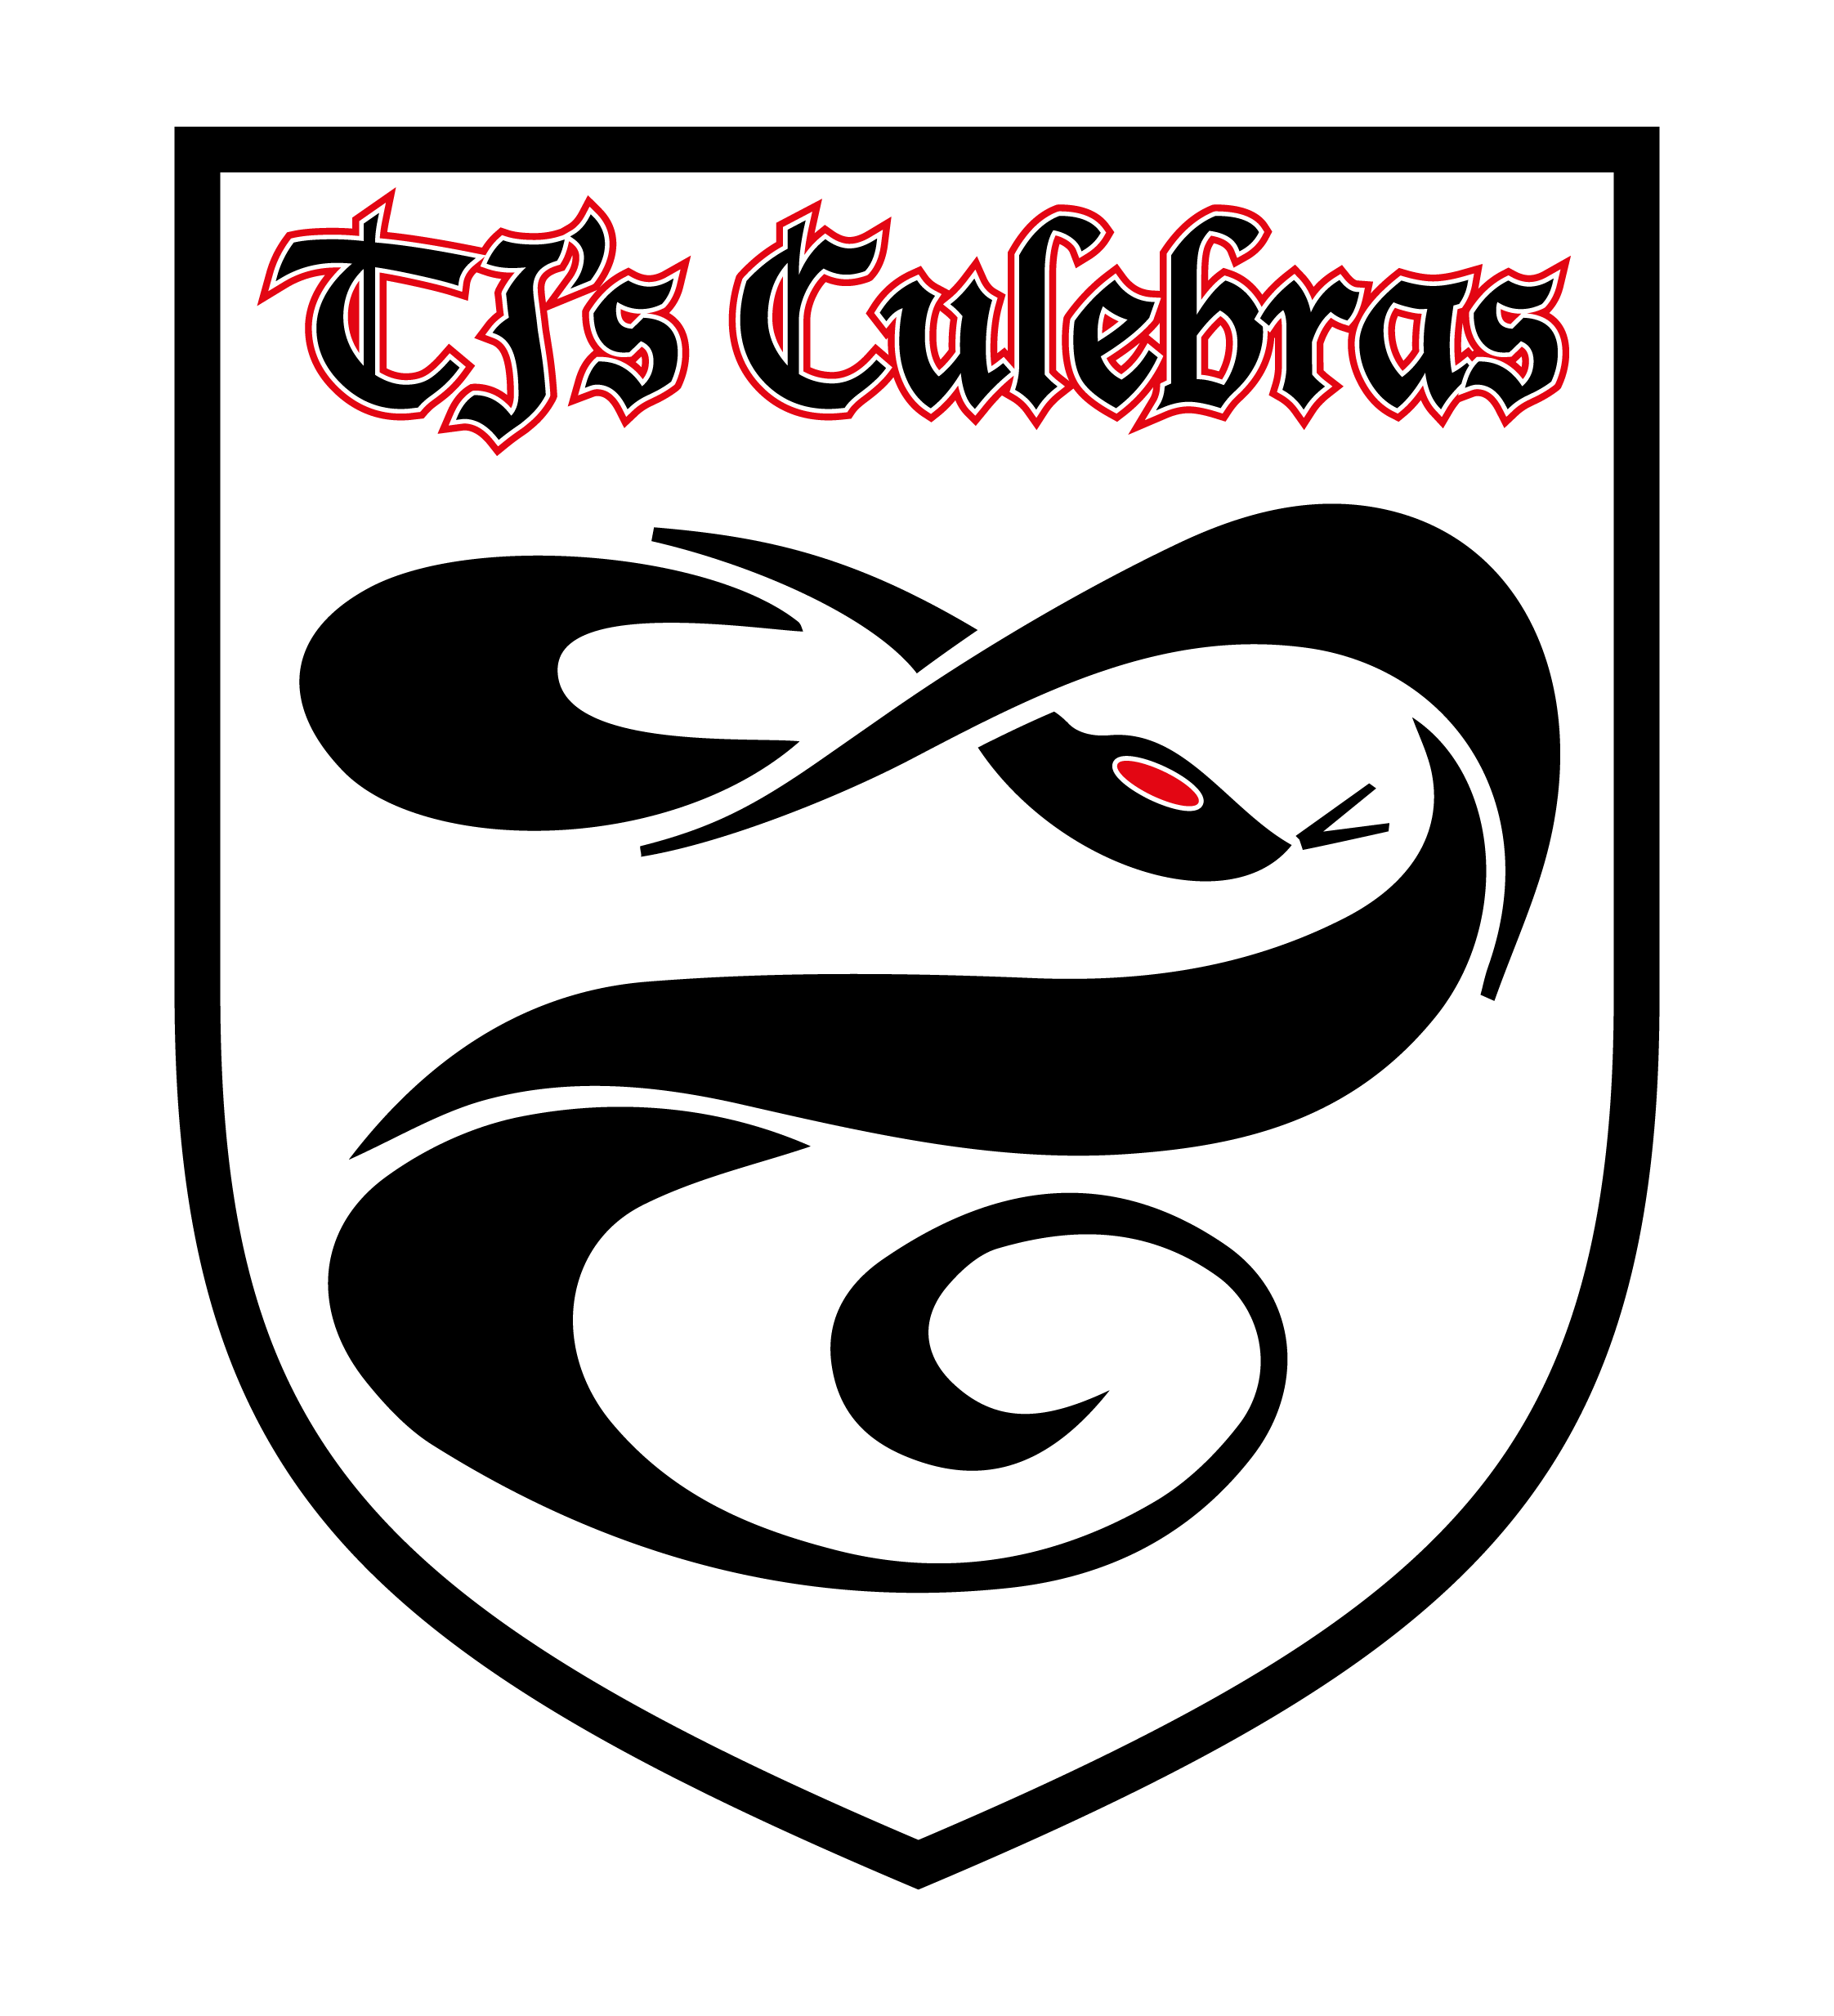 TJ's Culebras